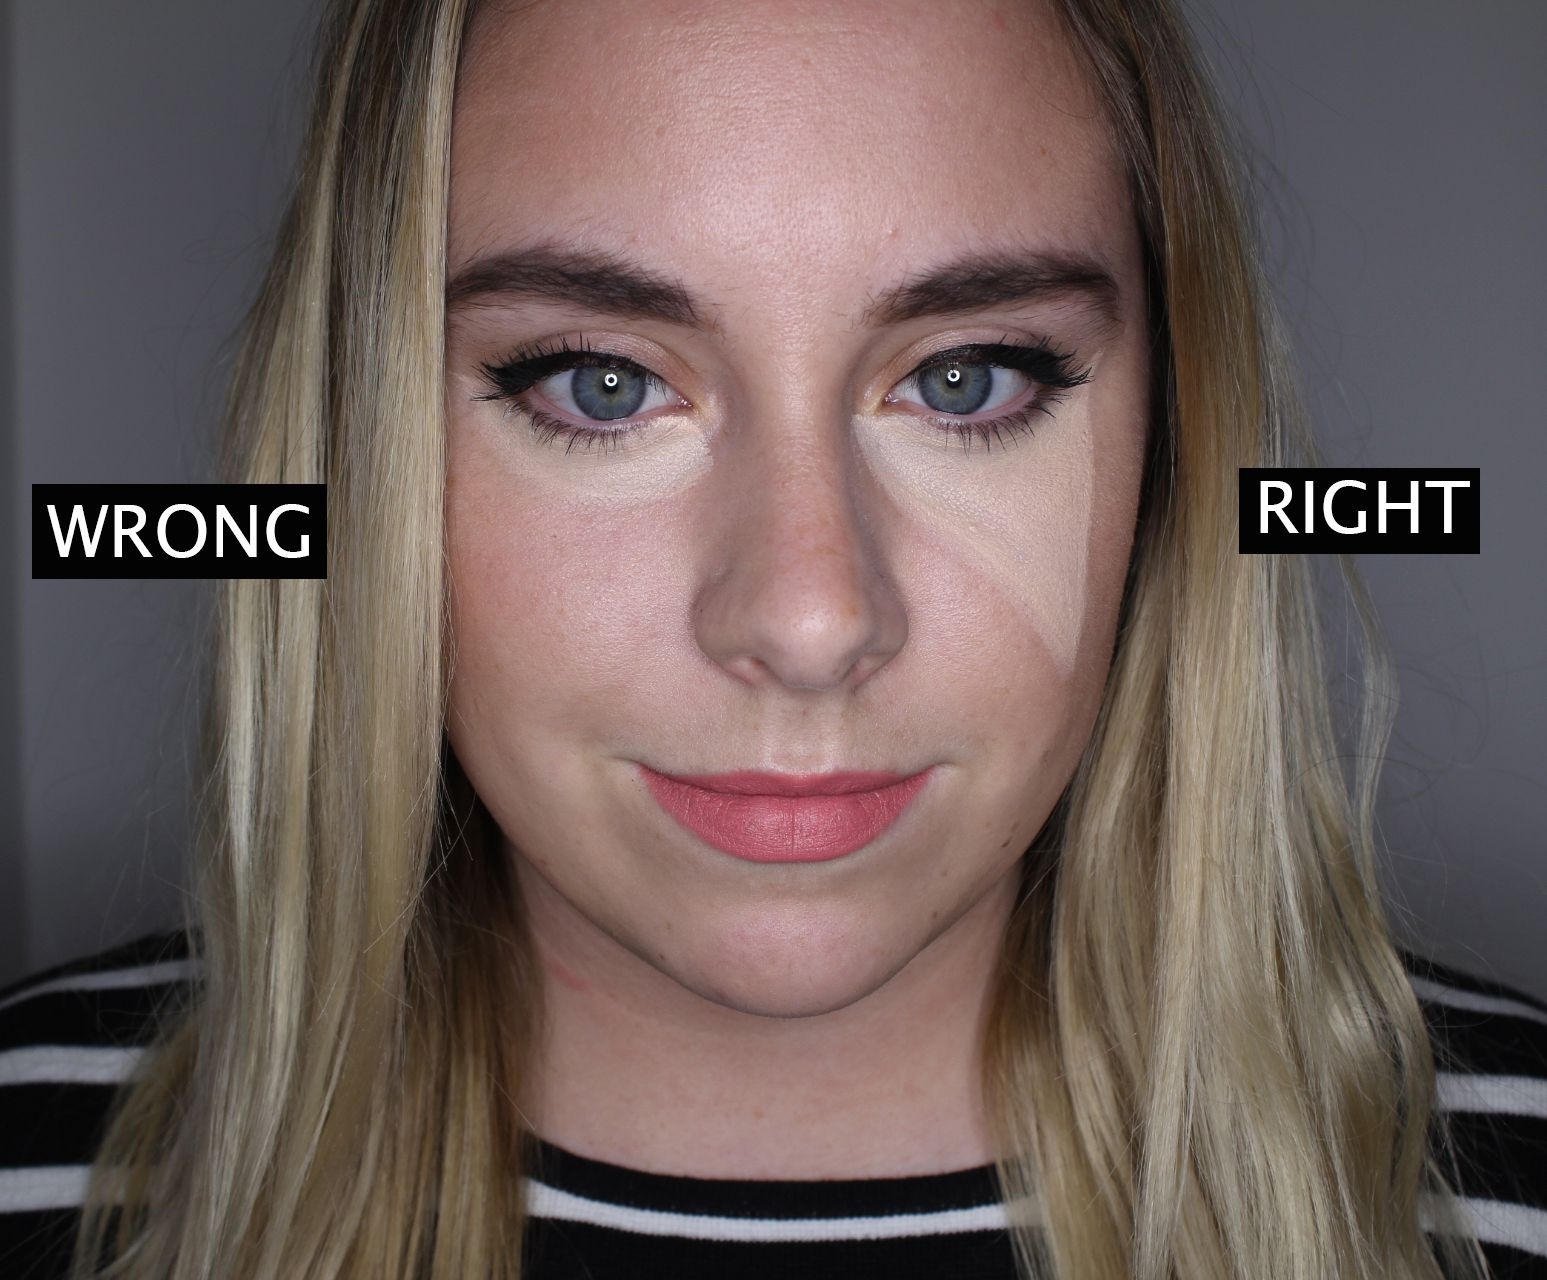 Eye Makeup To Make Small Eyes Look Bigger How To Make Your Eyes Look Bigger With And Without Makeup 10 Hacks